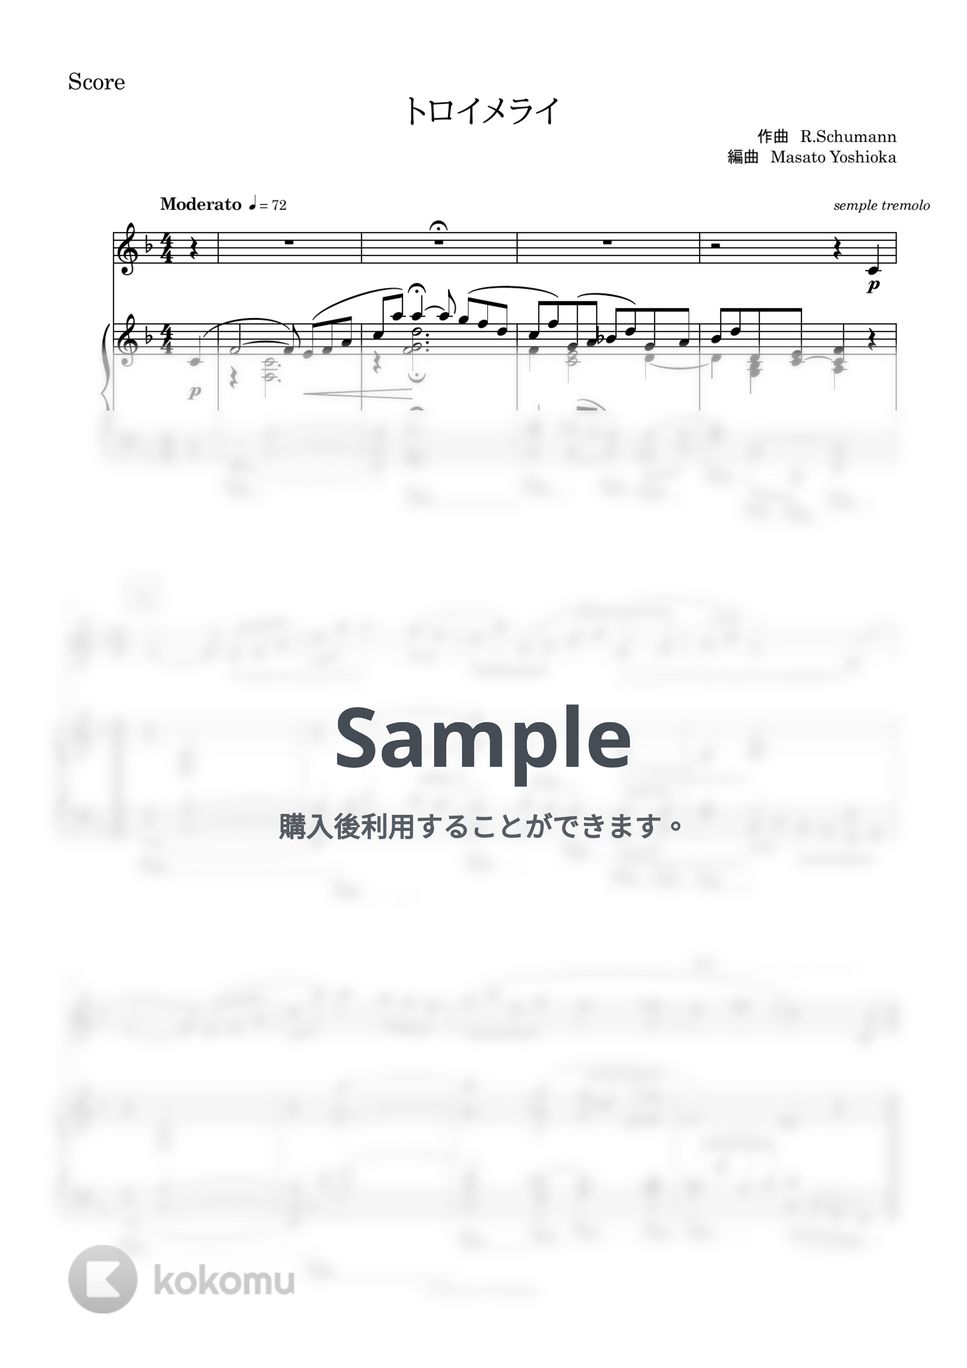 ロベルト・シューマン - トロイメライ (マリンバソロ/ピアノ伴奏/パート譜付き) by 吉岡雅人